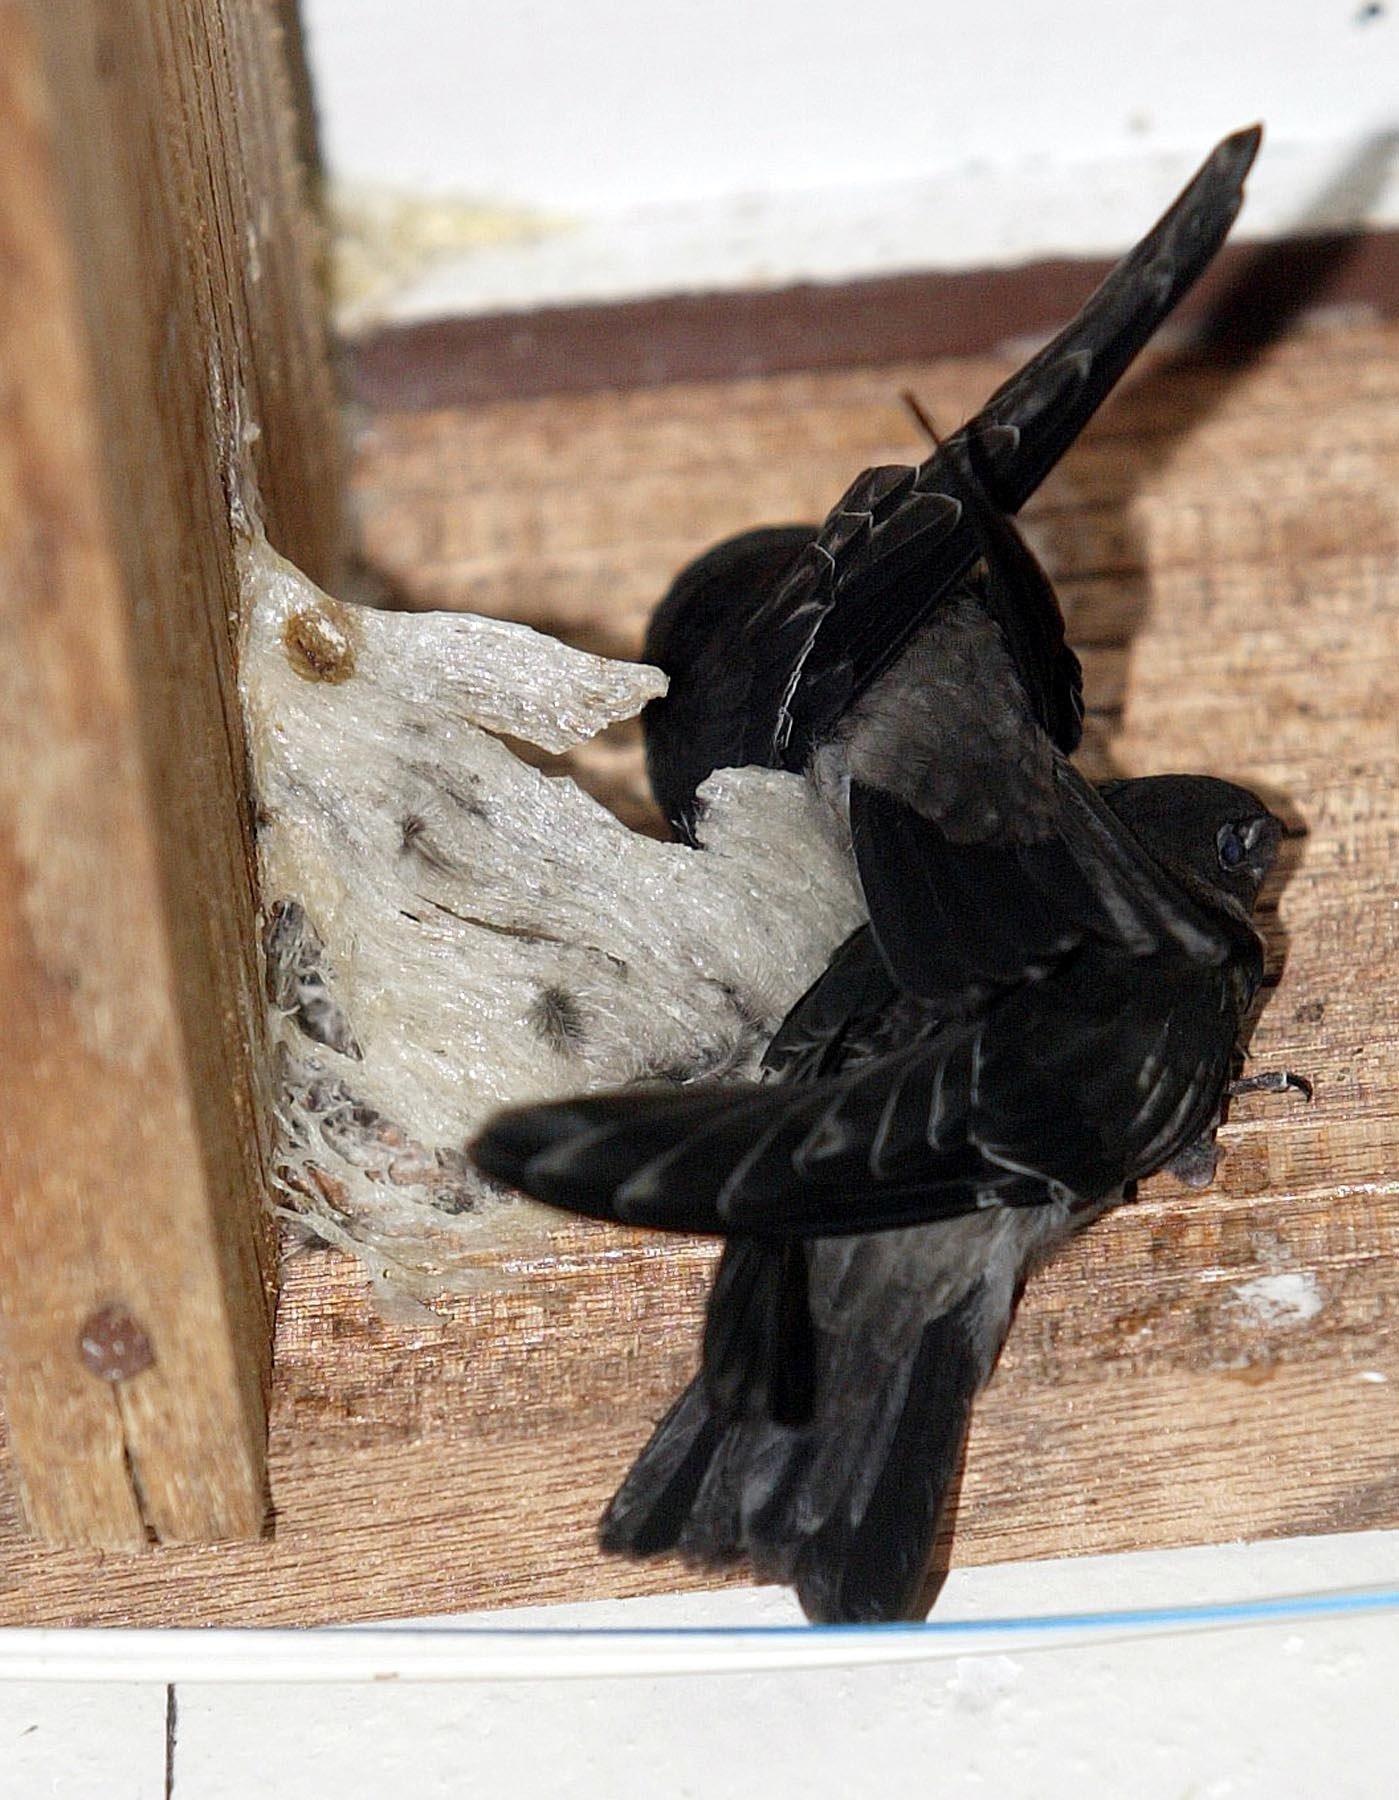 燕子因为在森林常受到飞行类及其他动物干扰，而喜好来到人们空置的屋子筑窝。（档案照）